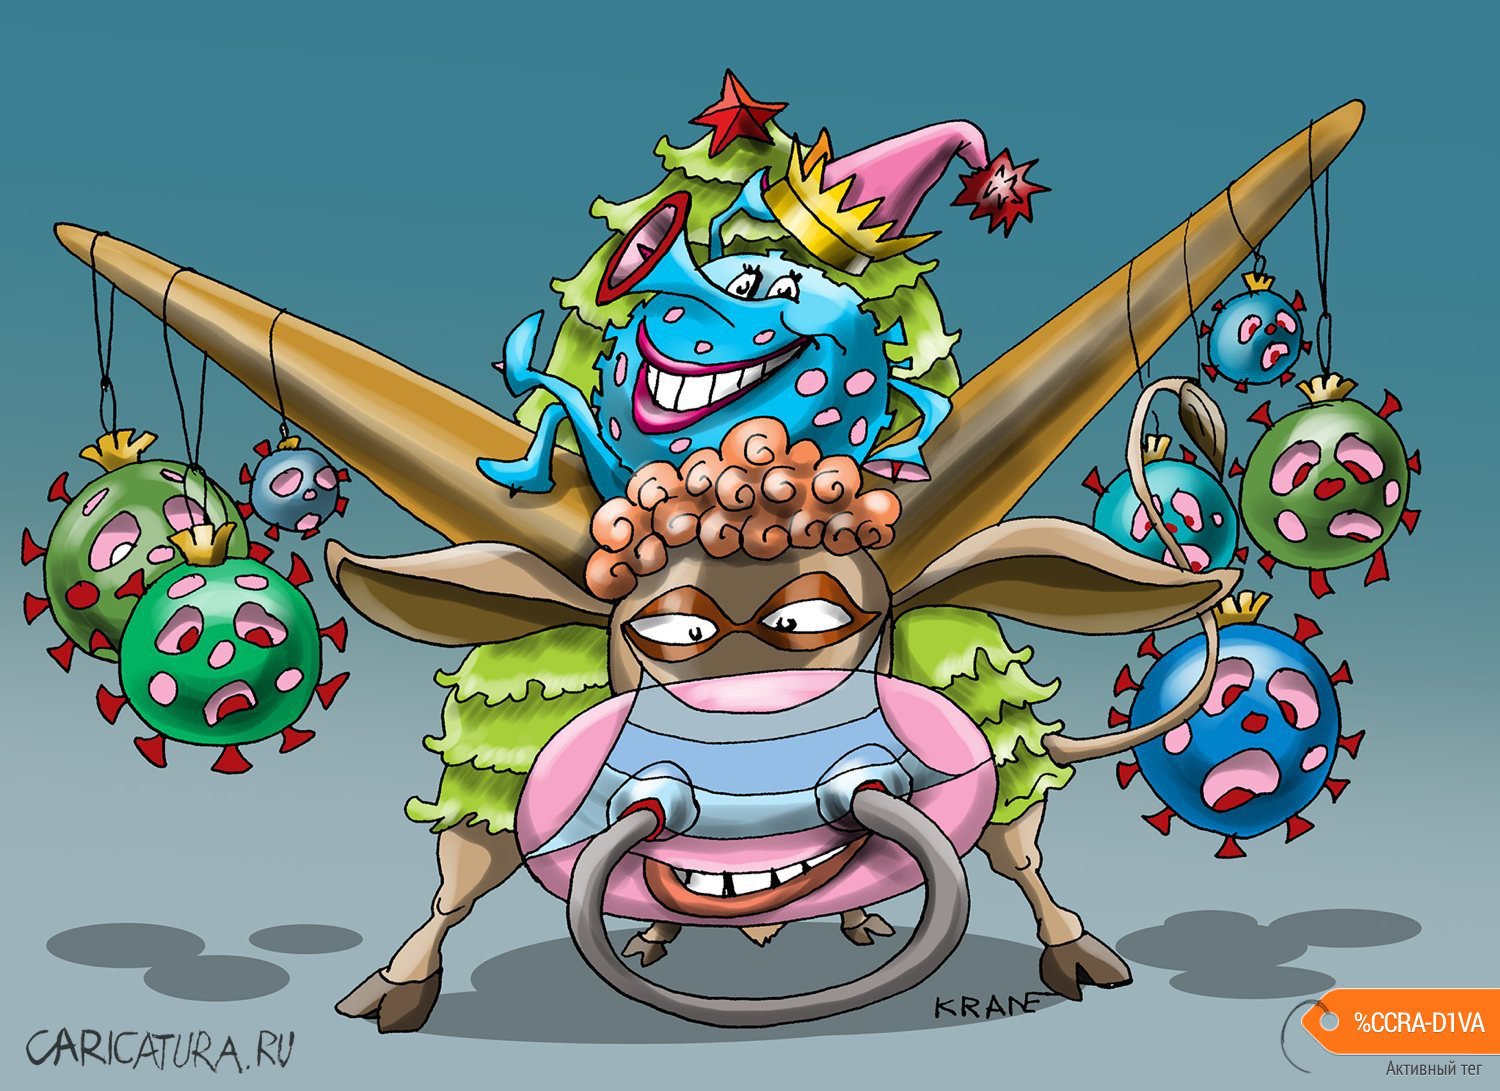 Карикатура "Кто не боится встретить Новый год", Евгений Кран